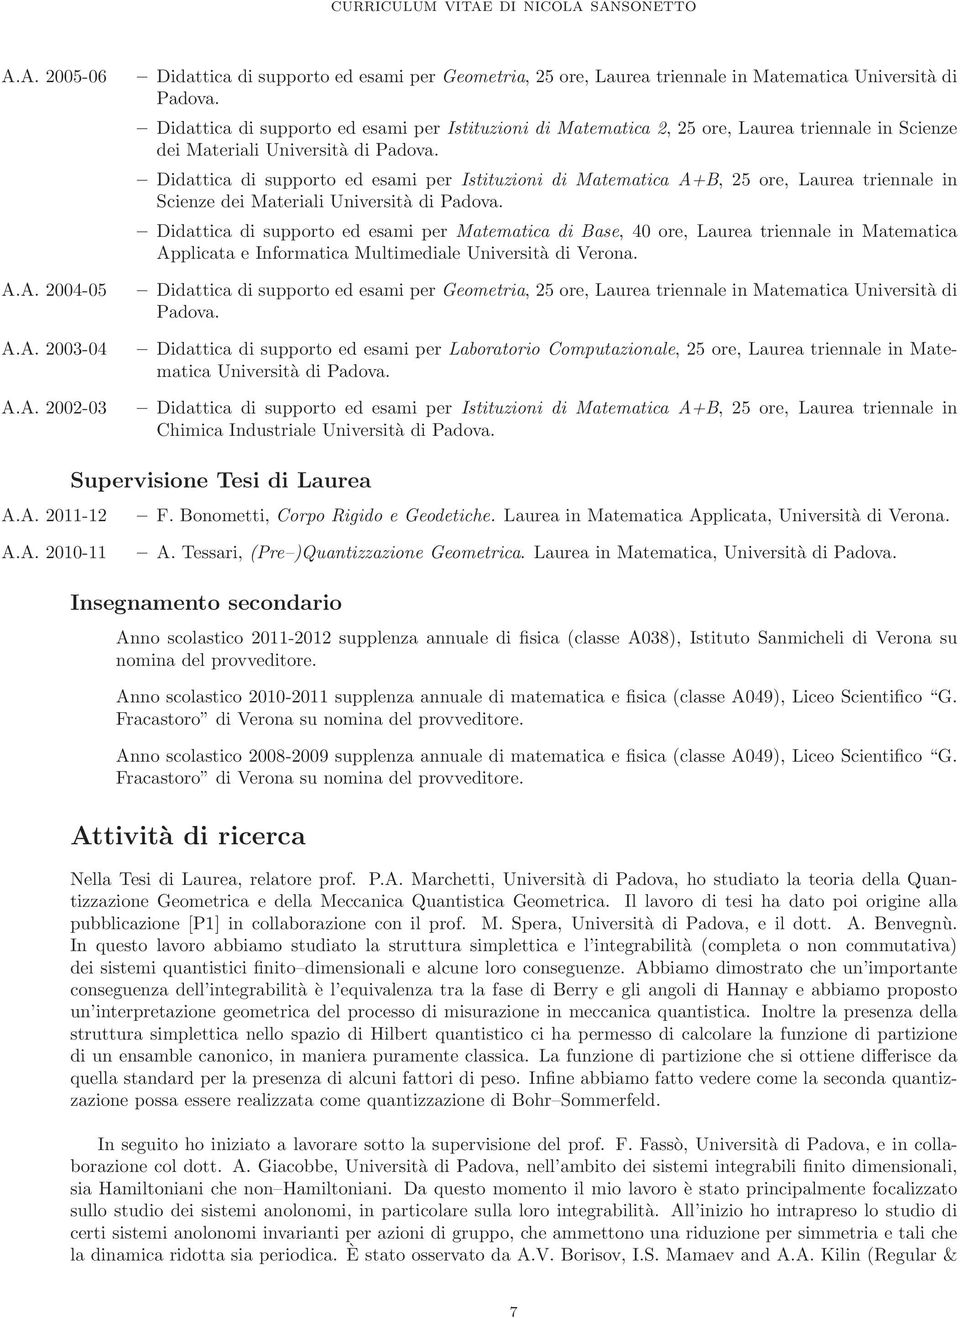 Didattica di supporto ed esami per Istituzioni di Matematica A+B, 25 ore, Laurea triennale in Scienze dei Materiali Università di Padova.